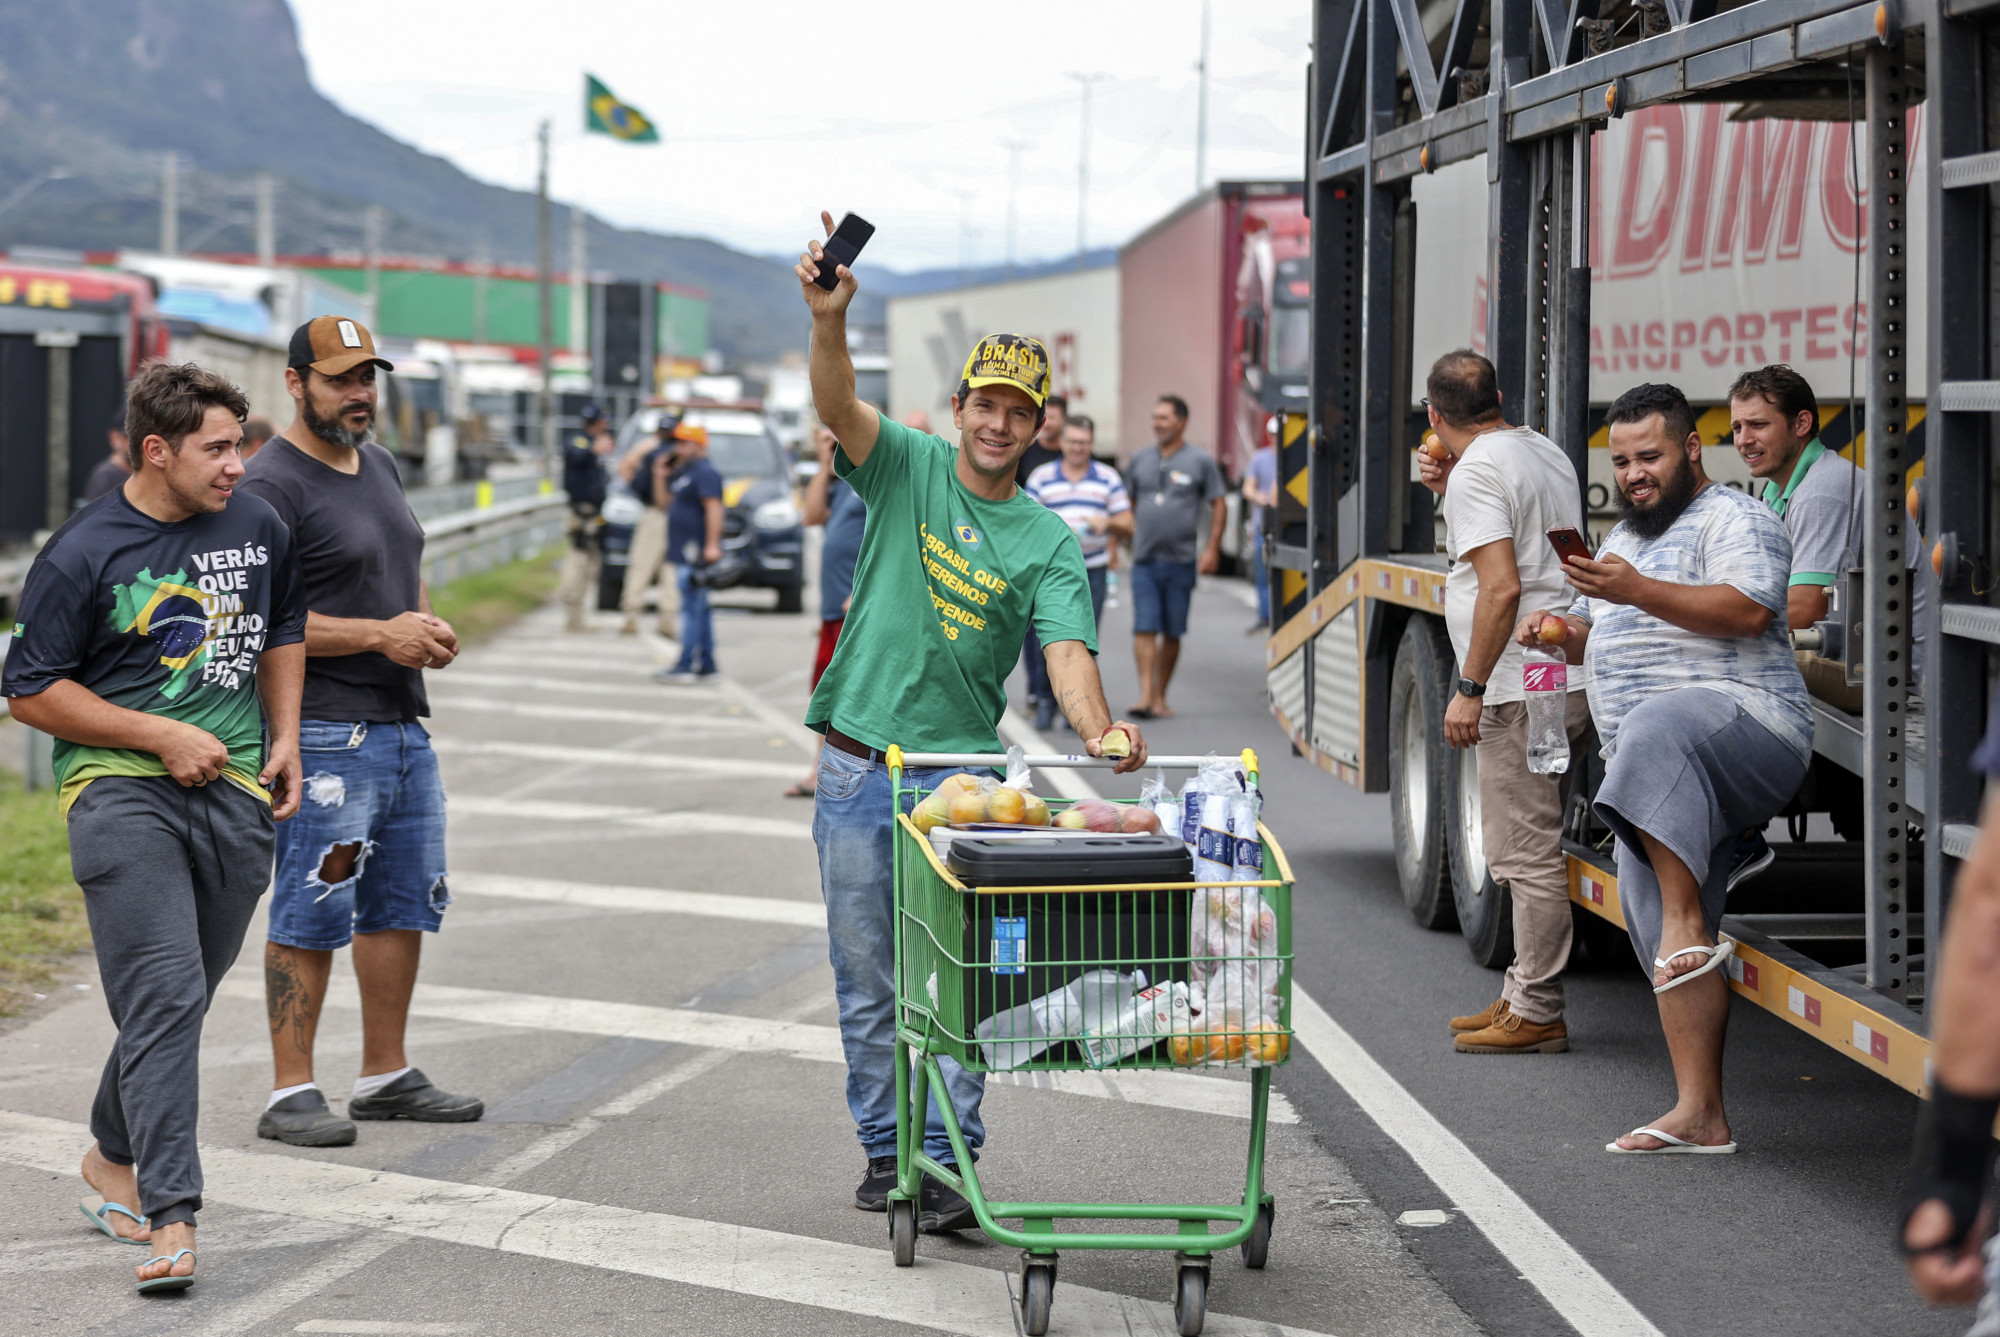 Útblokádokkal tiltakoznak Bolsonaro veresége ellen, a volt elnök megkérte őket, hogy menjenek haza